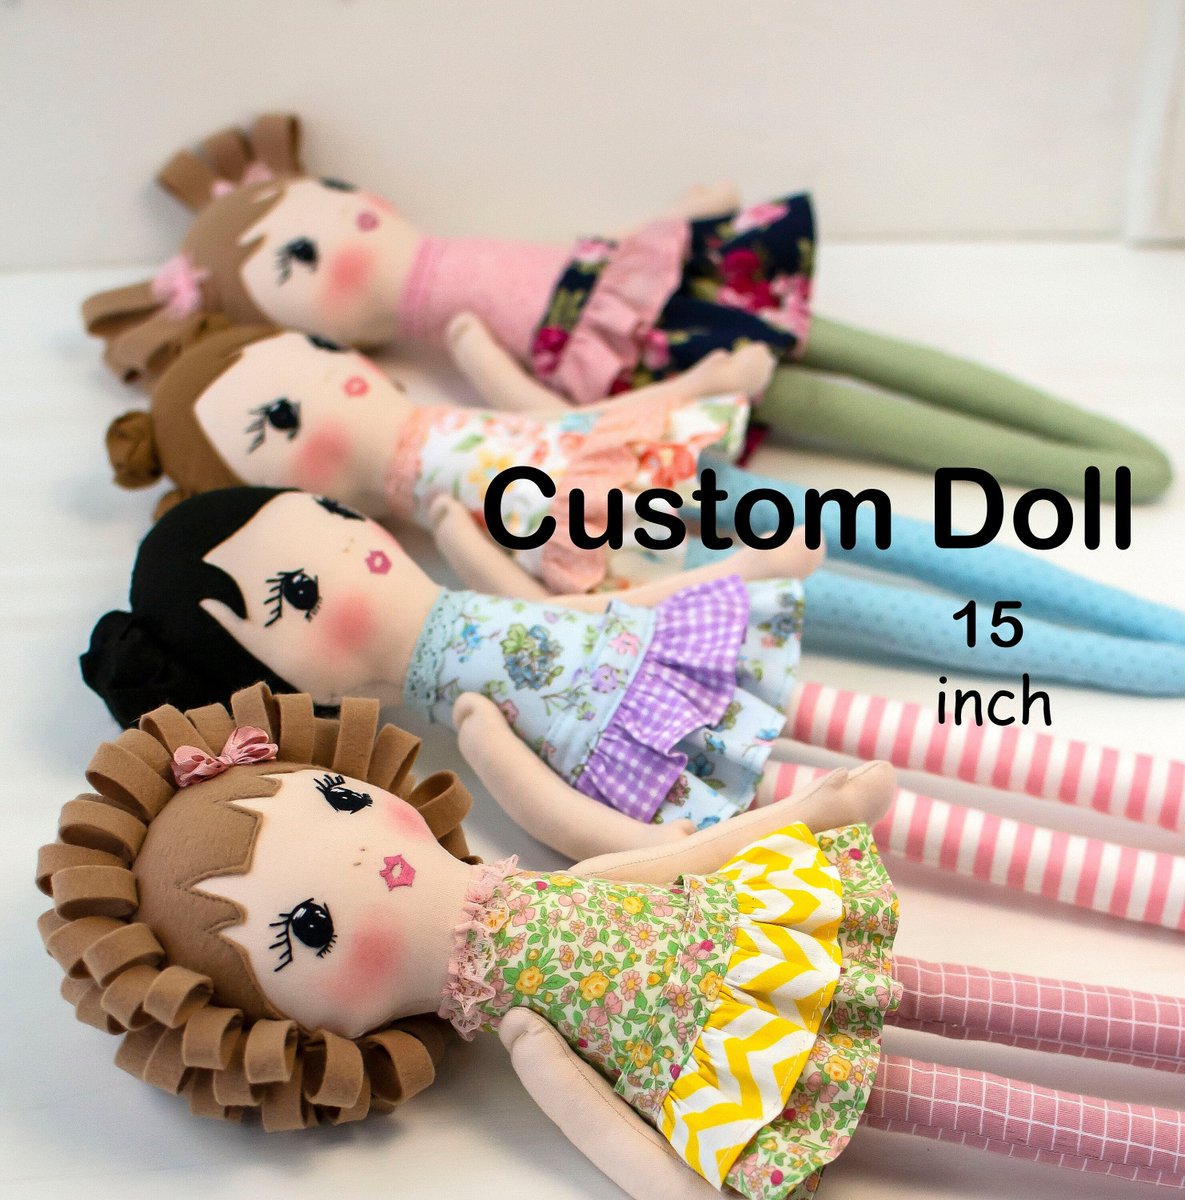 Rag doll handmade Custom doll Personalized cloth doll etsy.me/3qjjVQ9 #rainbow #birthday #customdoll #ragdoll #clothdoll #fabricdoll #heirloomdoll #personalizeddoll #dollwithclothes